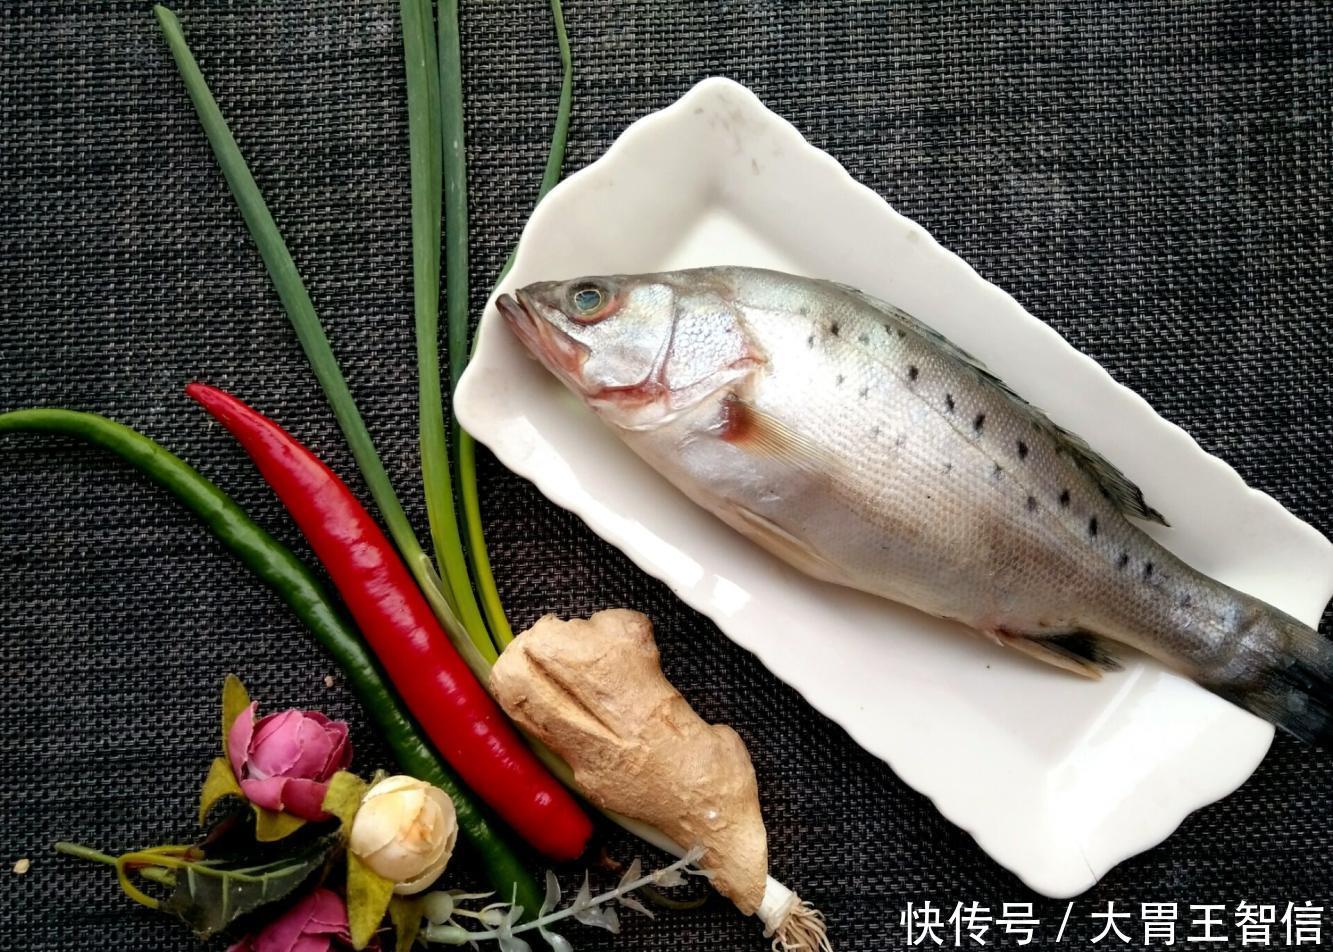 清蒸海鲈鱼, 做法简单, 味道鲜美